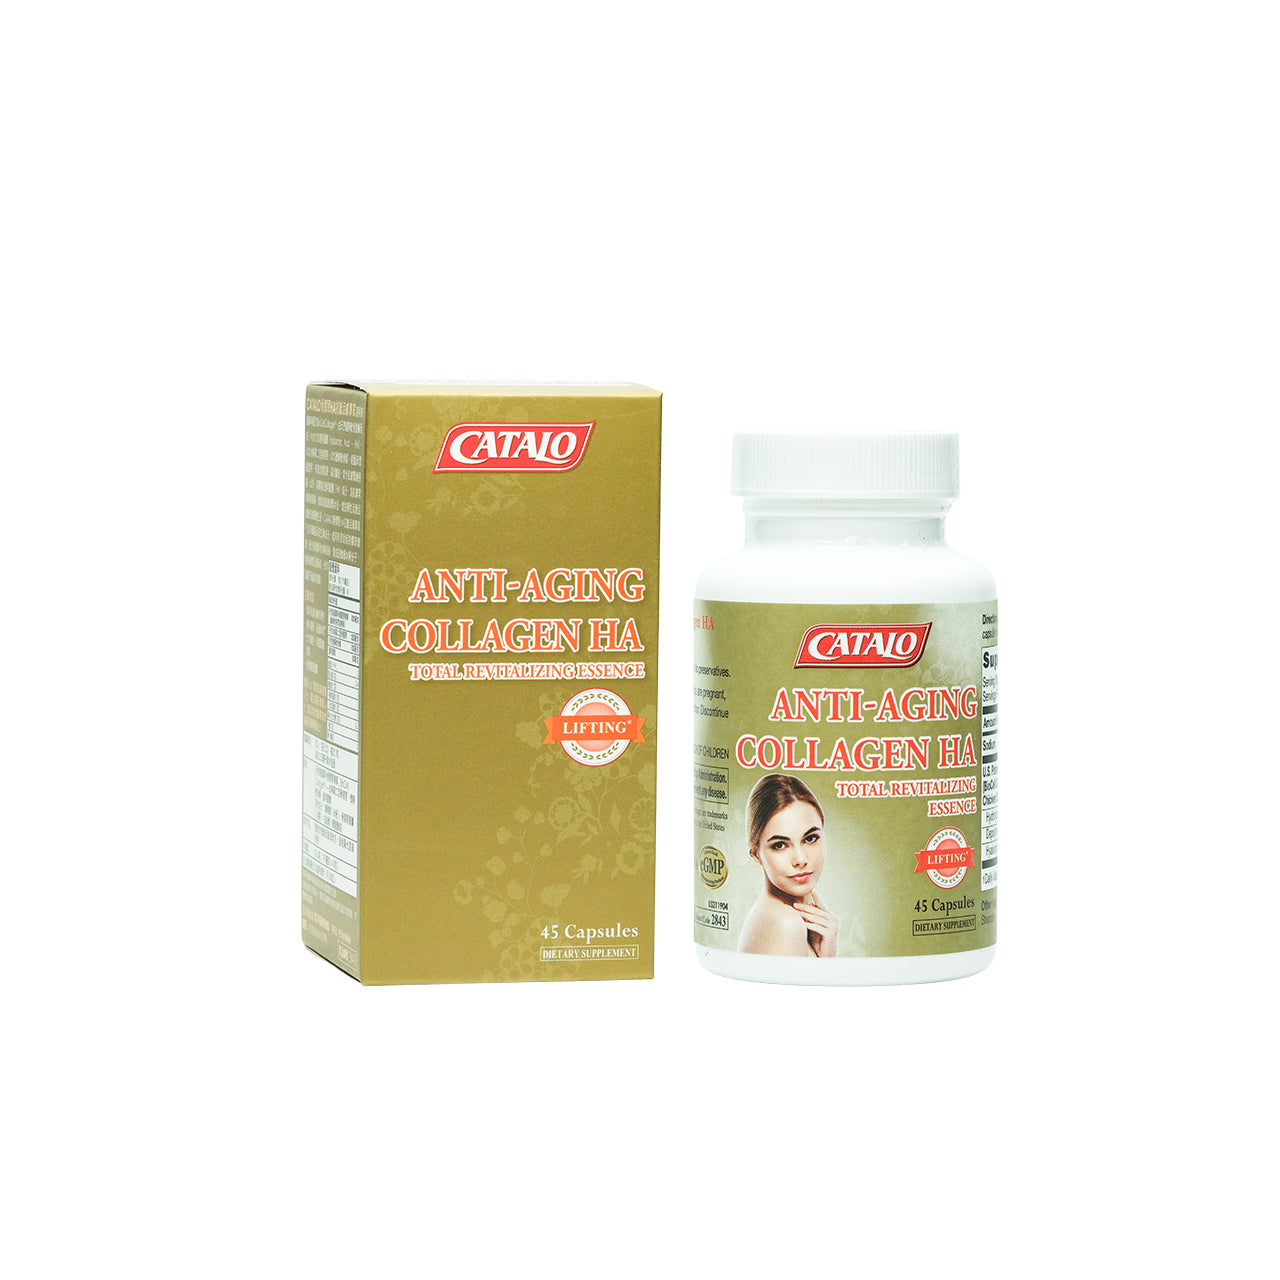 Catalo Anti-Aging Collagen Ha 45 Capsules